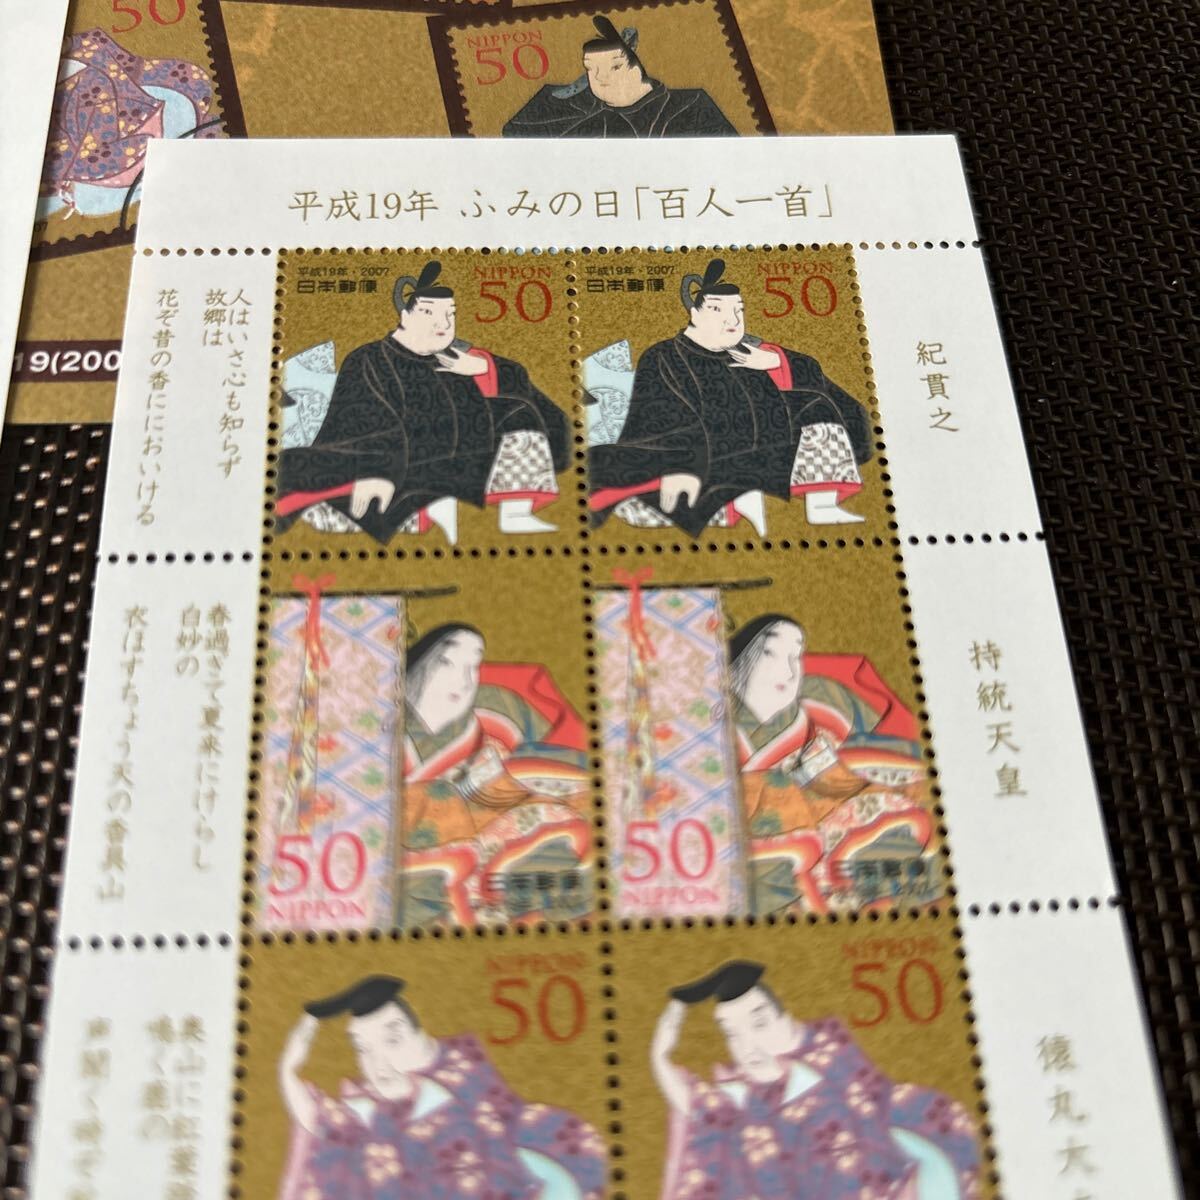 181) Fumi no Hi .... mail stamp 